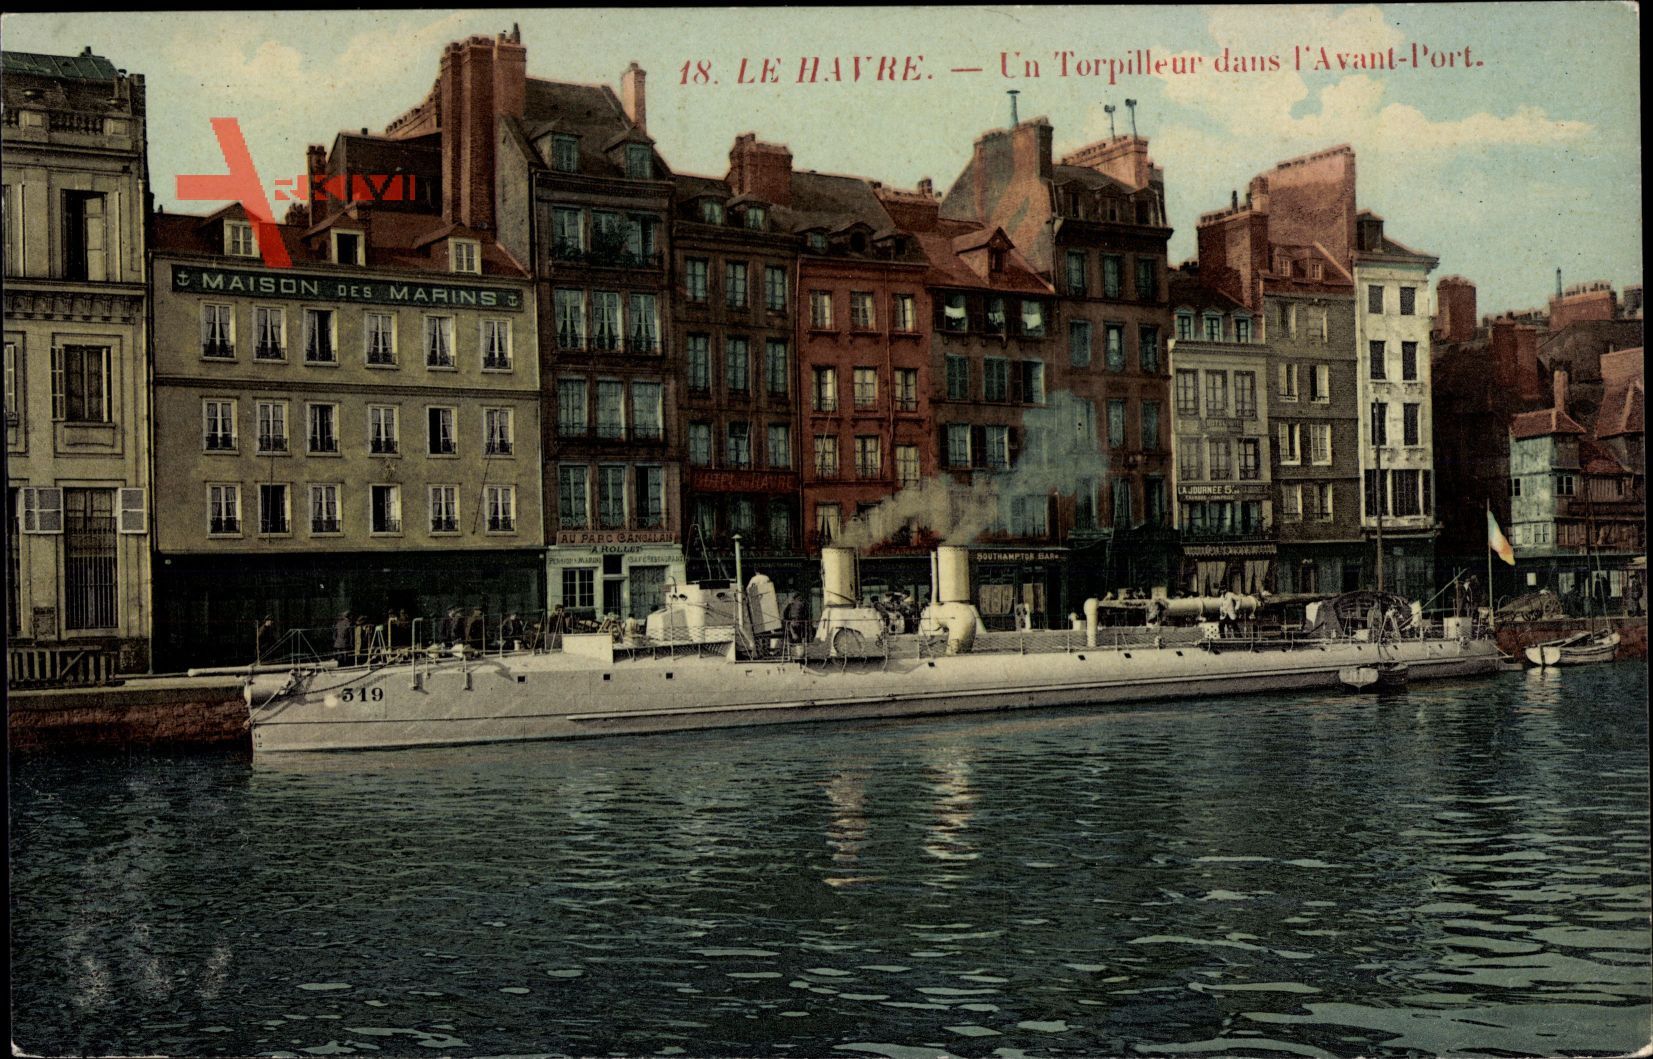 Le Havre Seine Maritime, Un Torpilleur dans lavant Port